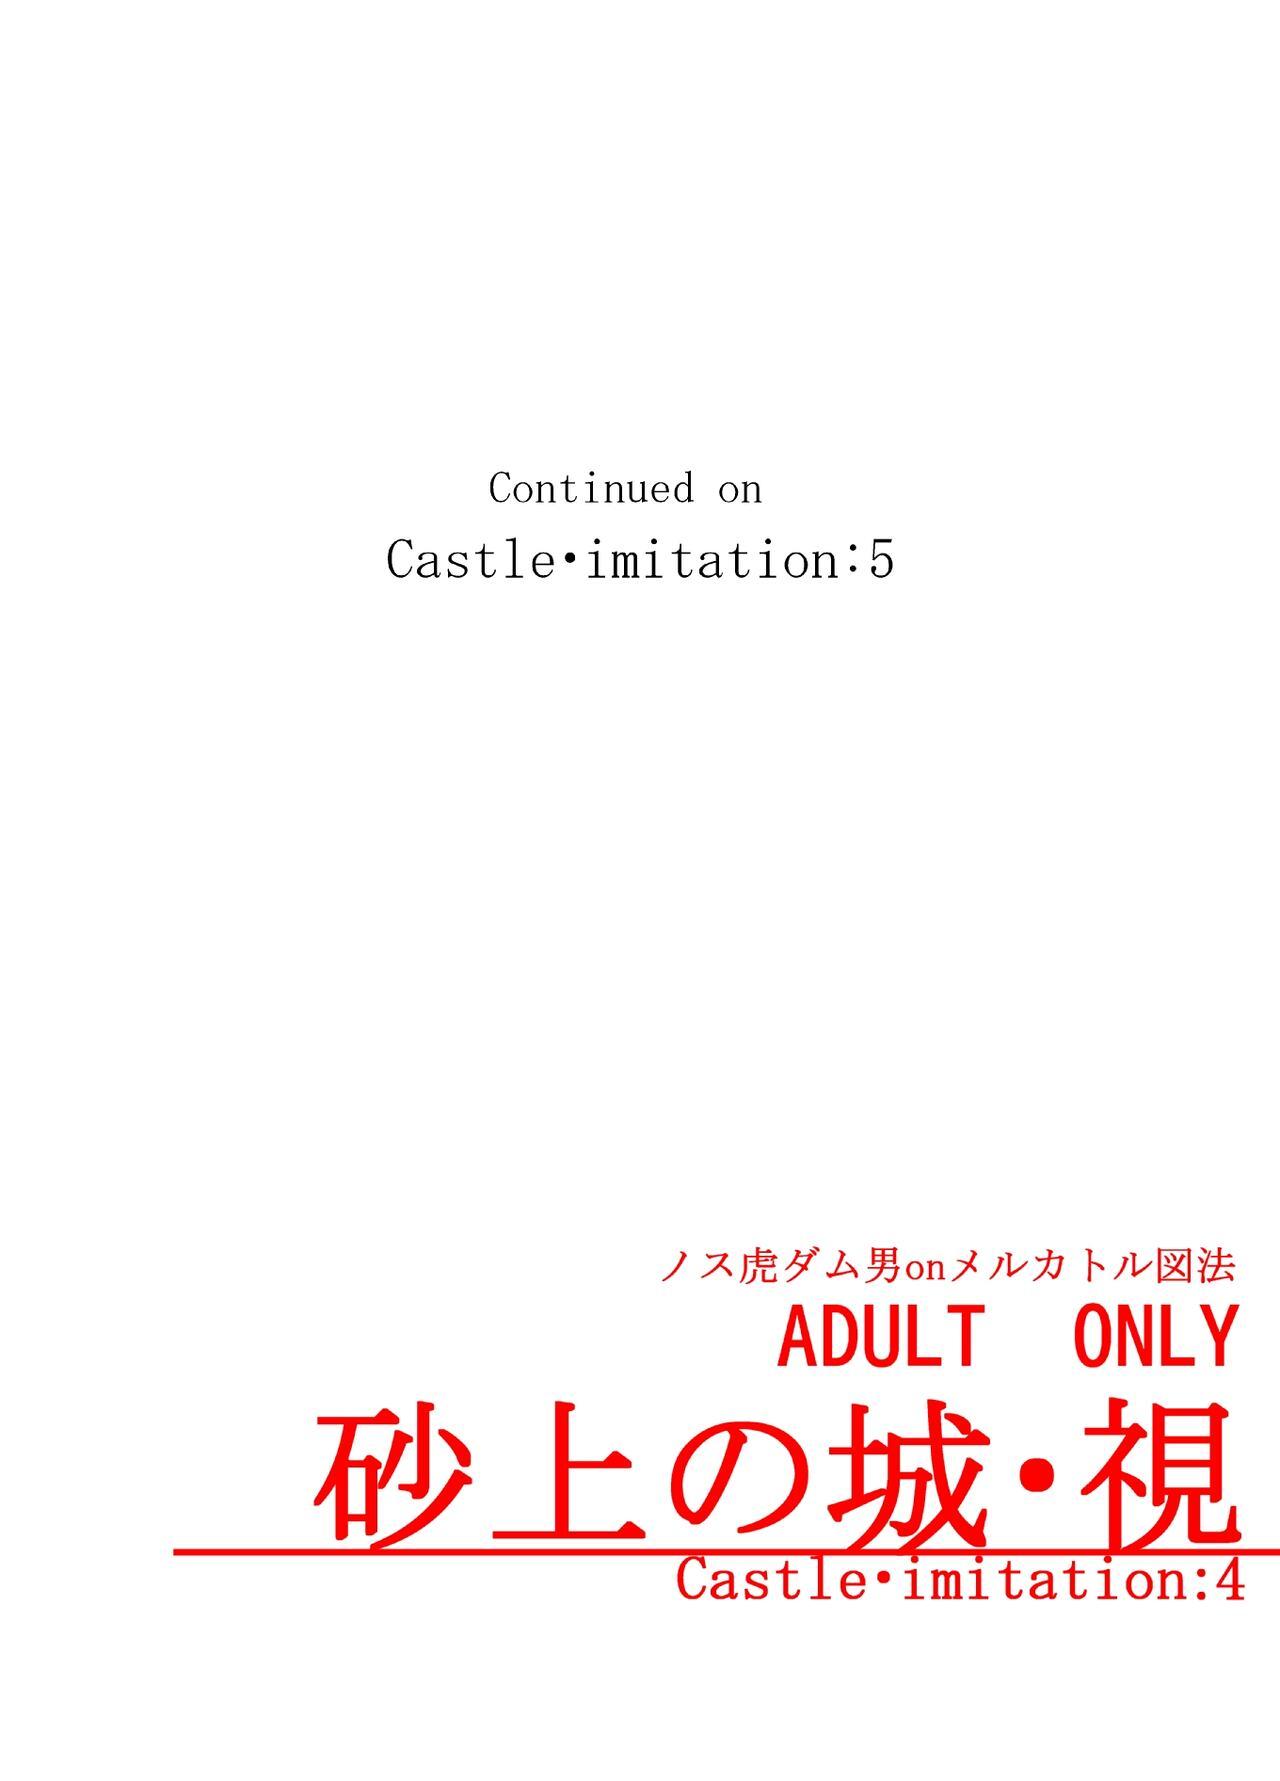 Sajou no Shiro Shi / Castle・imitation4 49